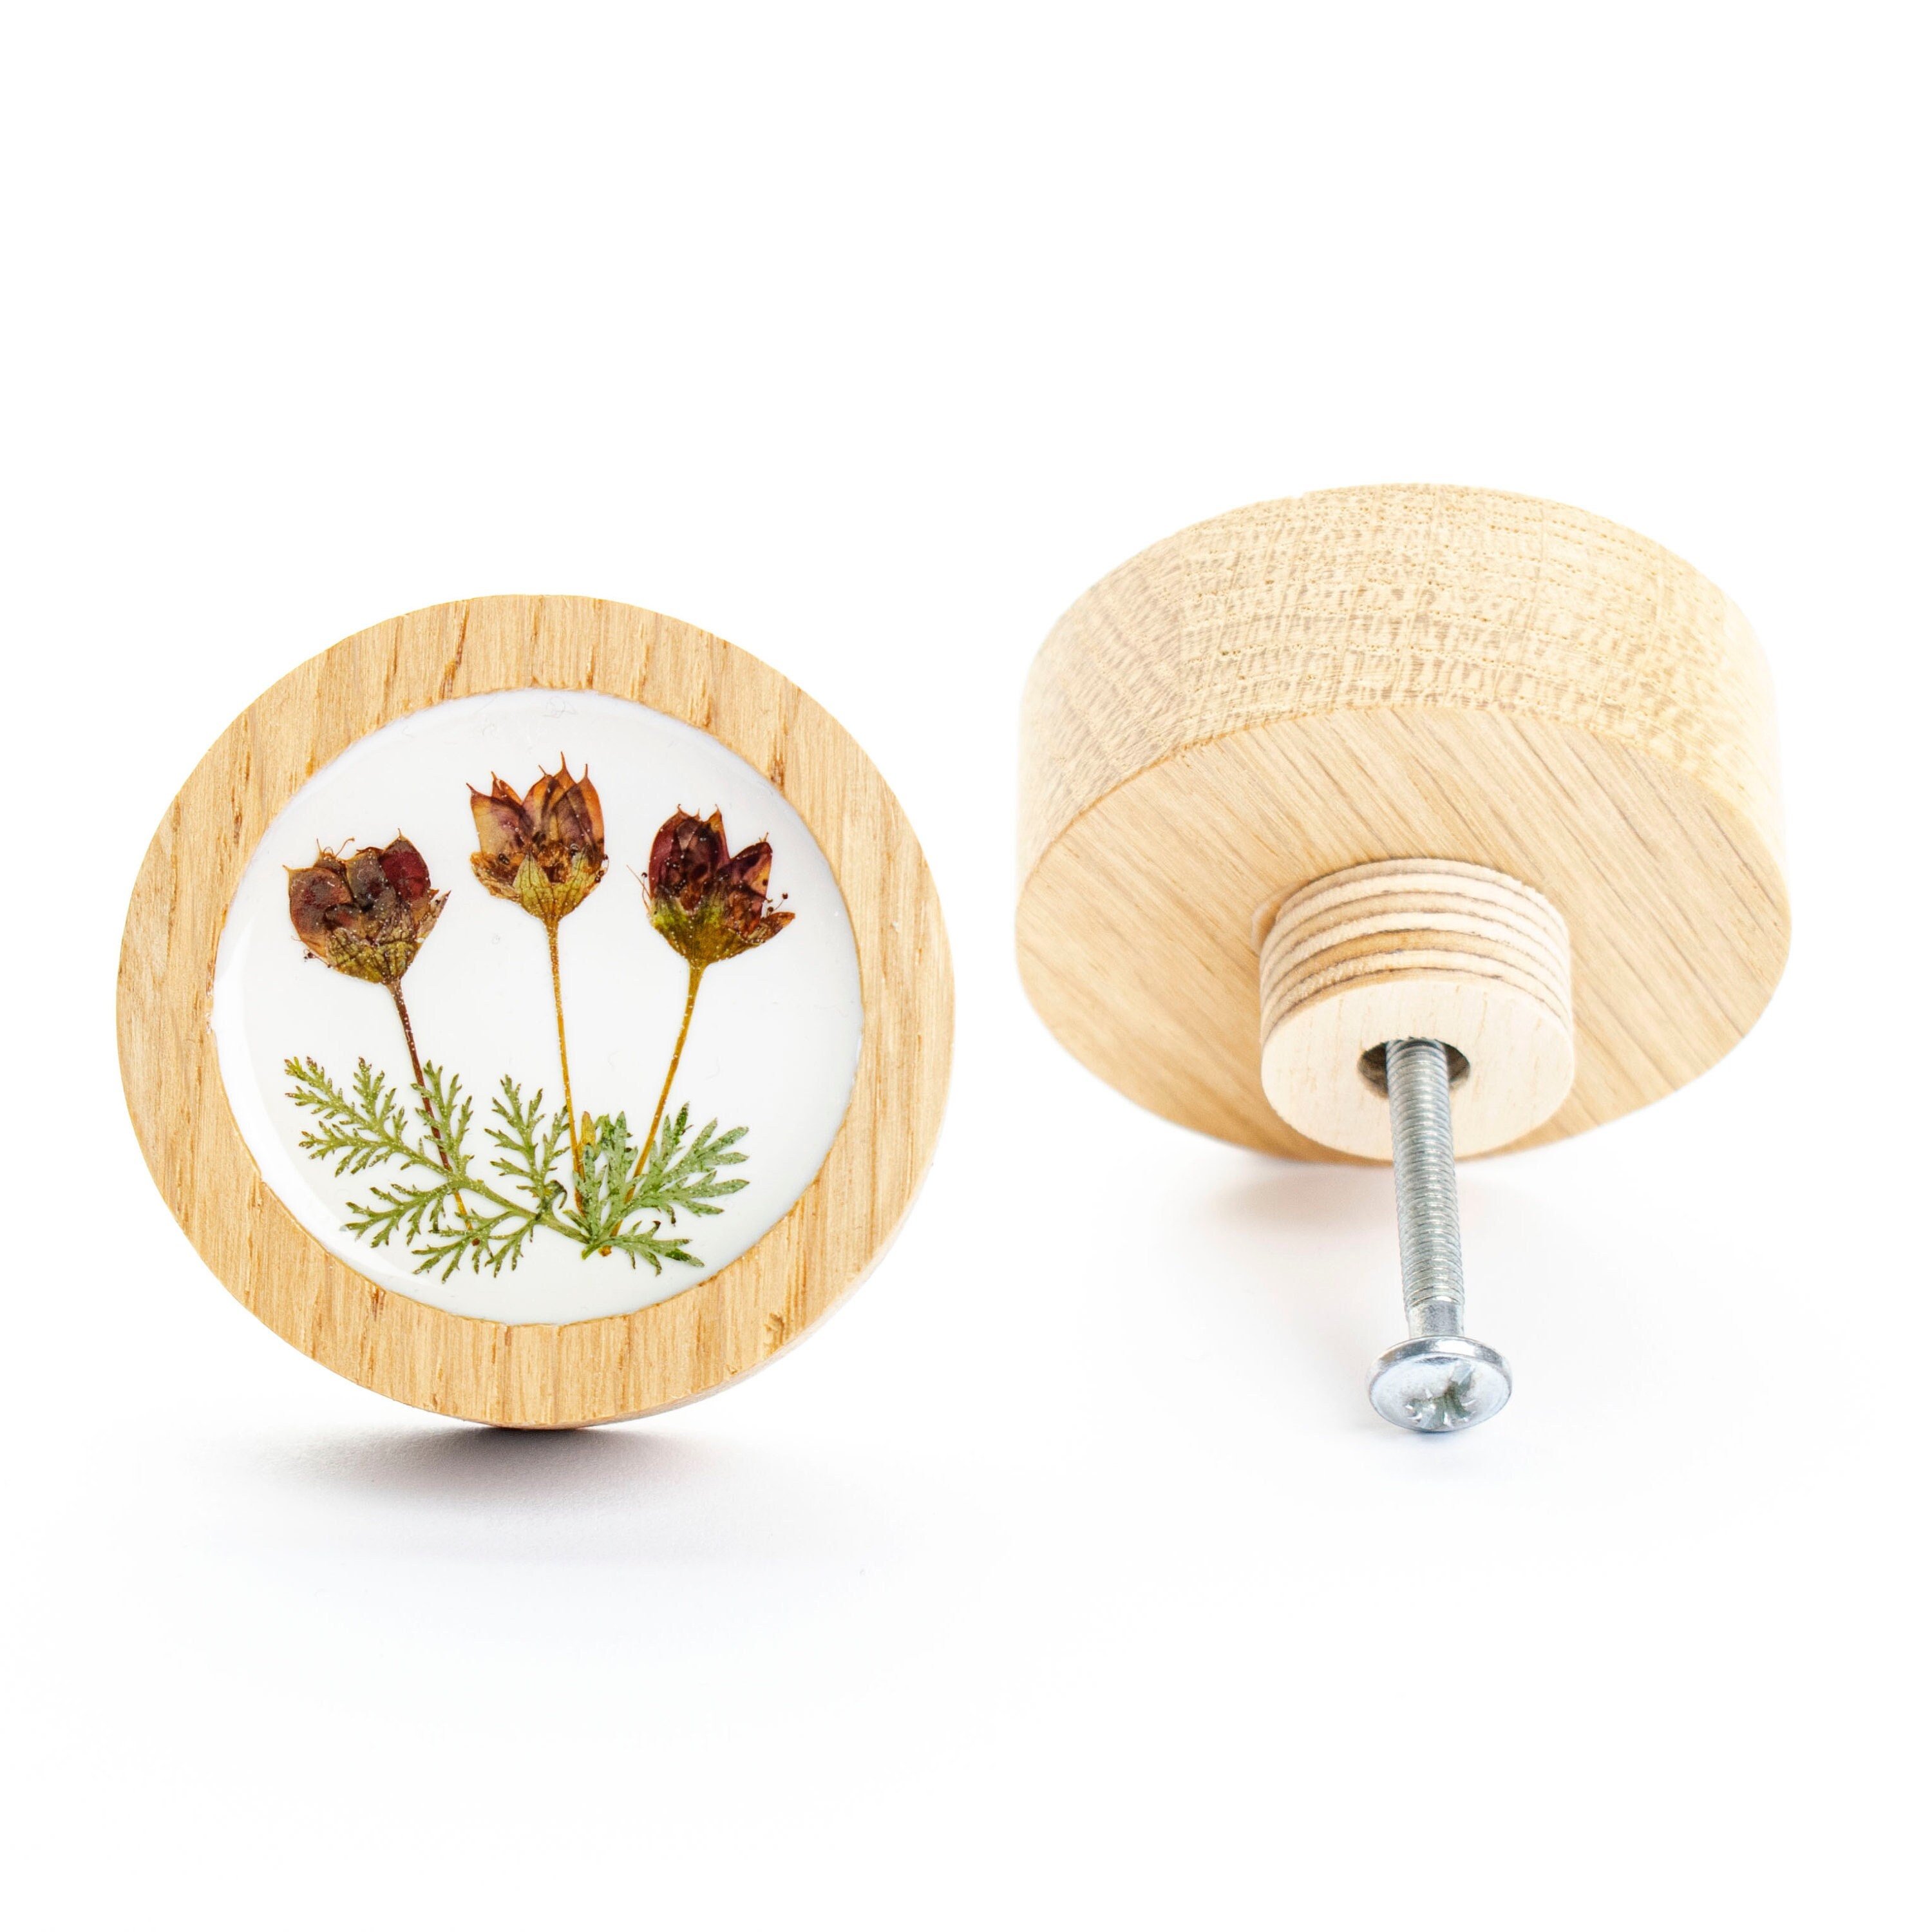 bouton de tiroir 5 cm/2 po. bohème, fleurs séchées naturelles, bois de chêne avec résine époxy, bouton commode fleurie, design moderne